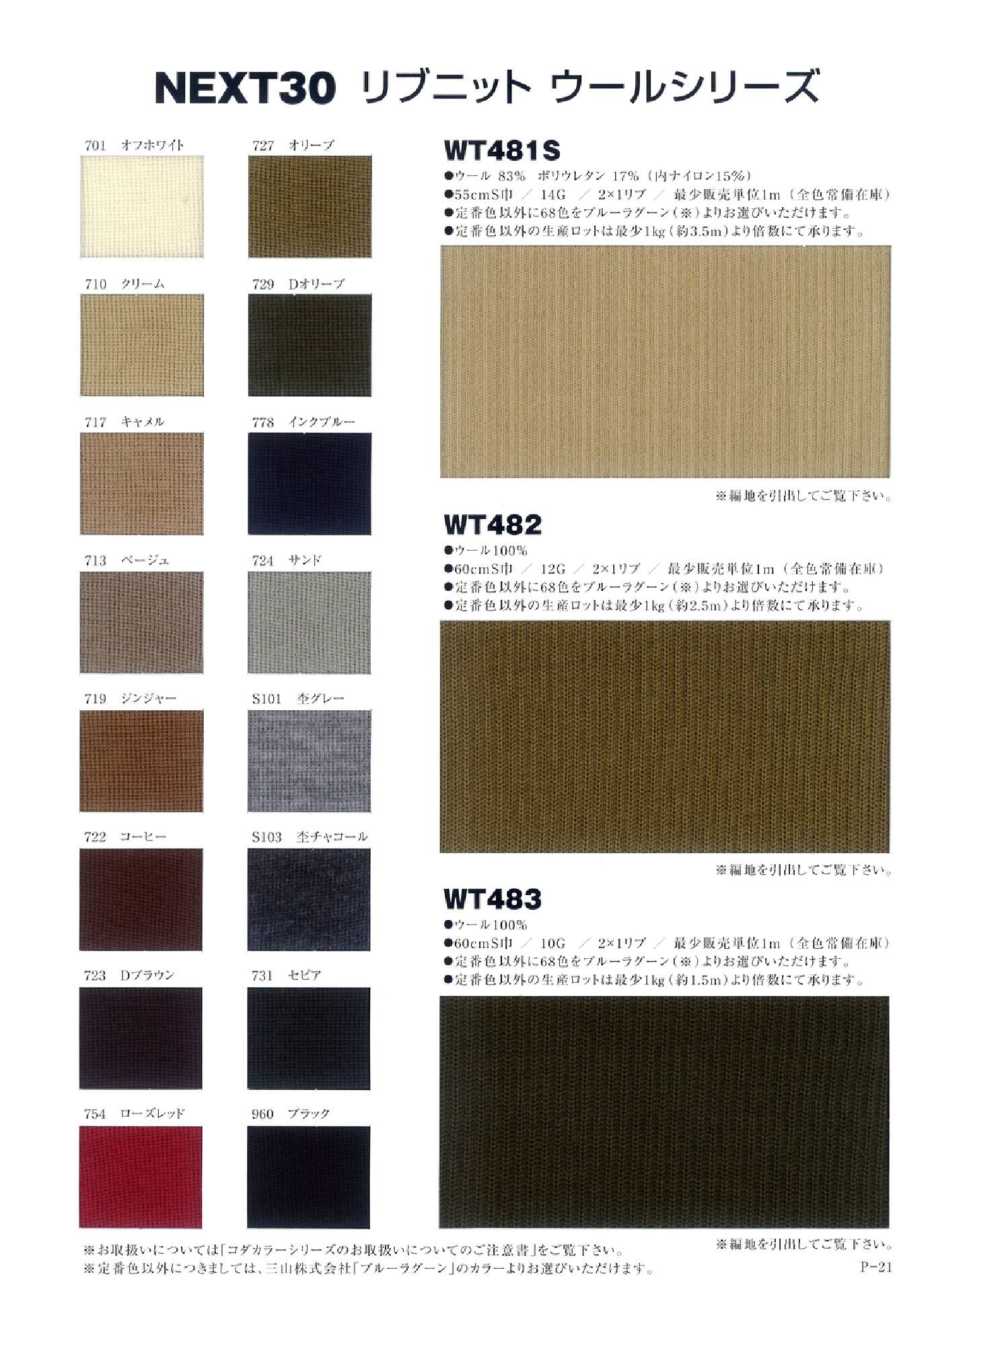 WT483 2/48 羊毛 2 × 1 羅紋針織[針織羅紋] NEXT30